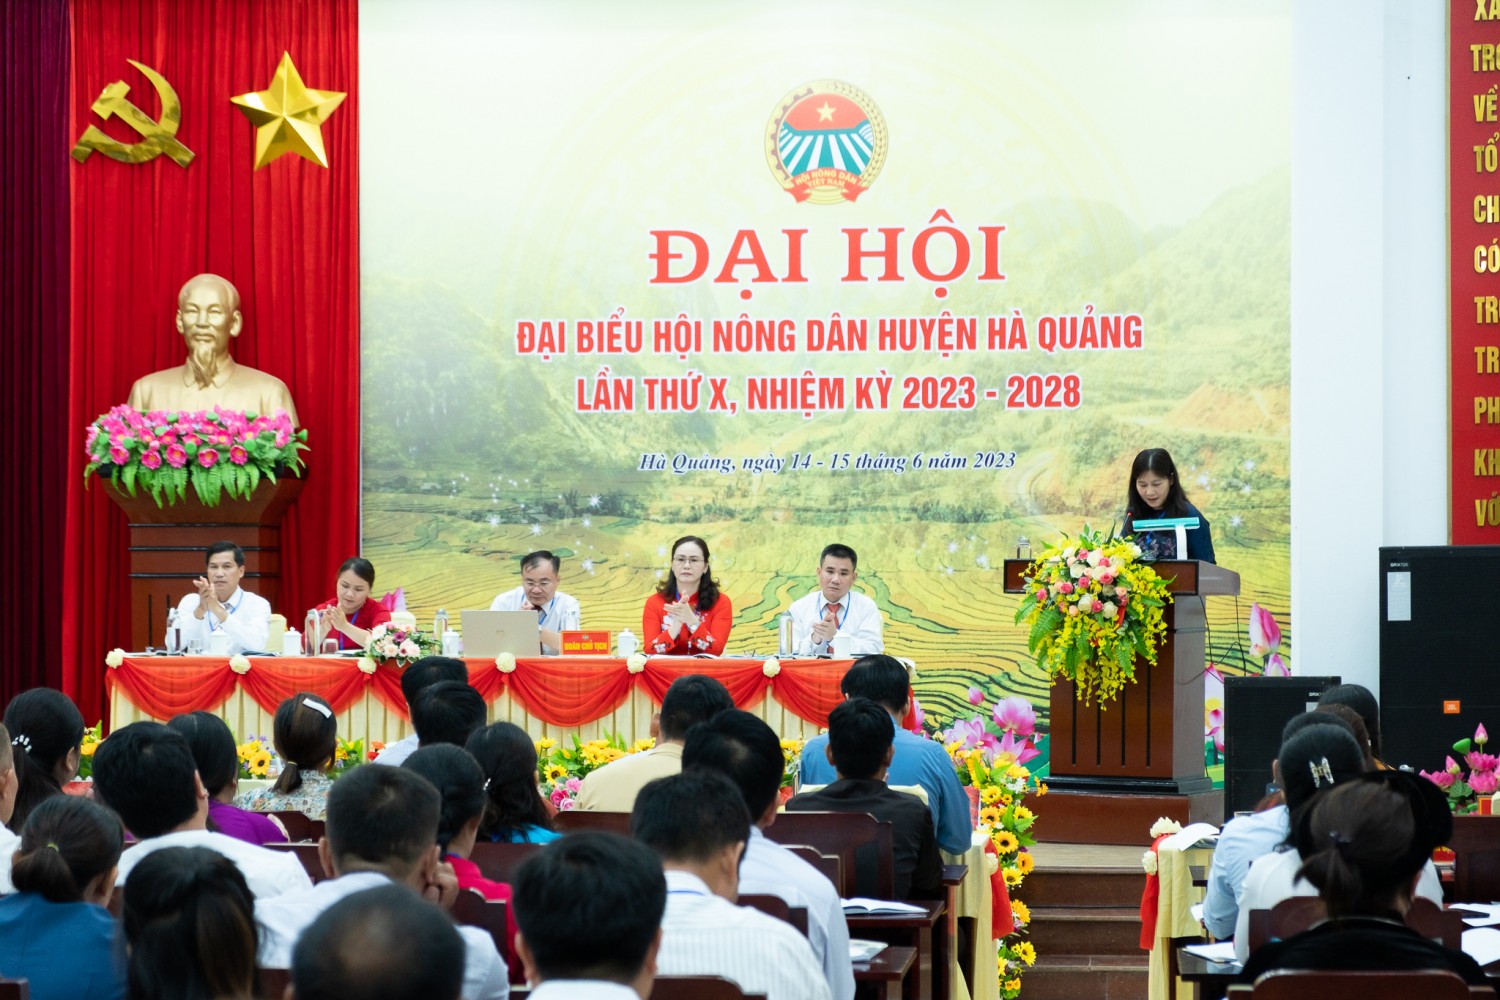 Đồng chí Lê Hải Yến, tỉnh ủy viên, Bí thư Huyện ủy phát biểu chỉ đạo đại hội